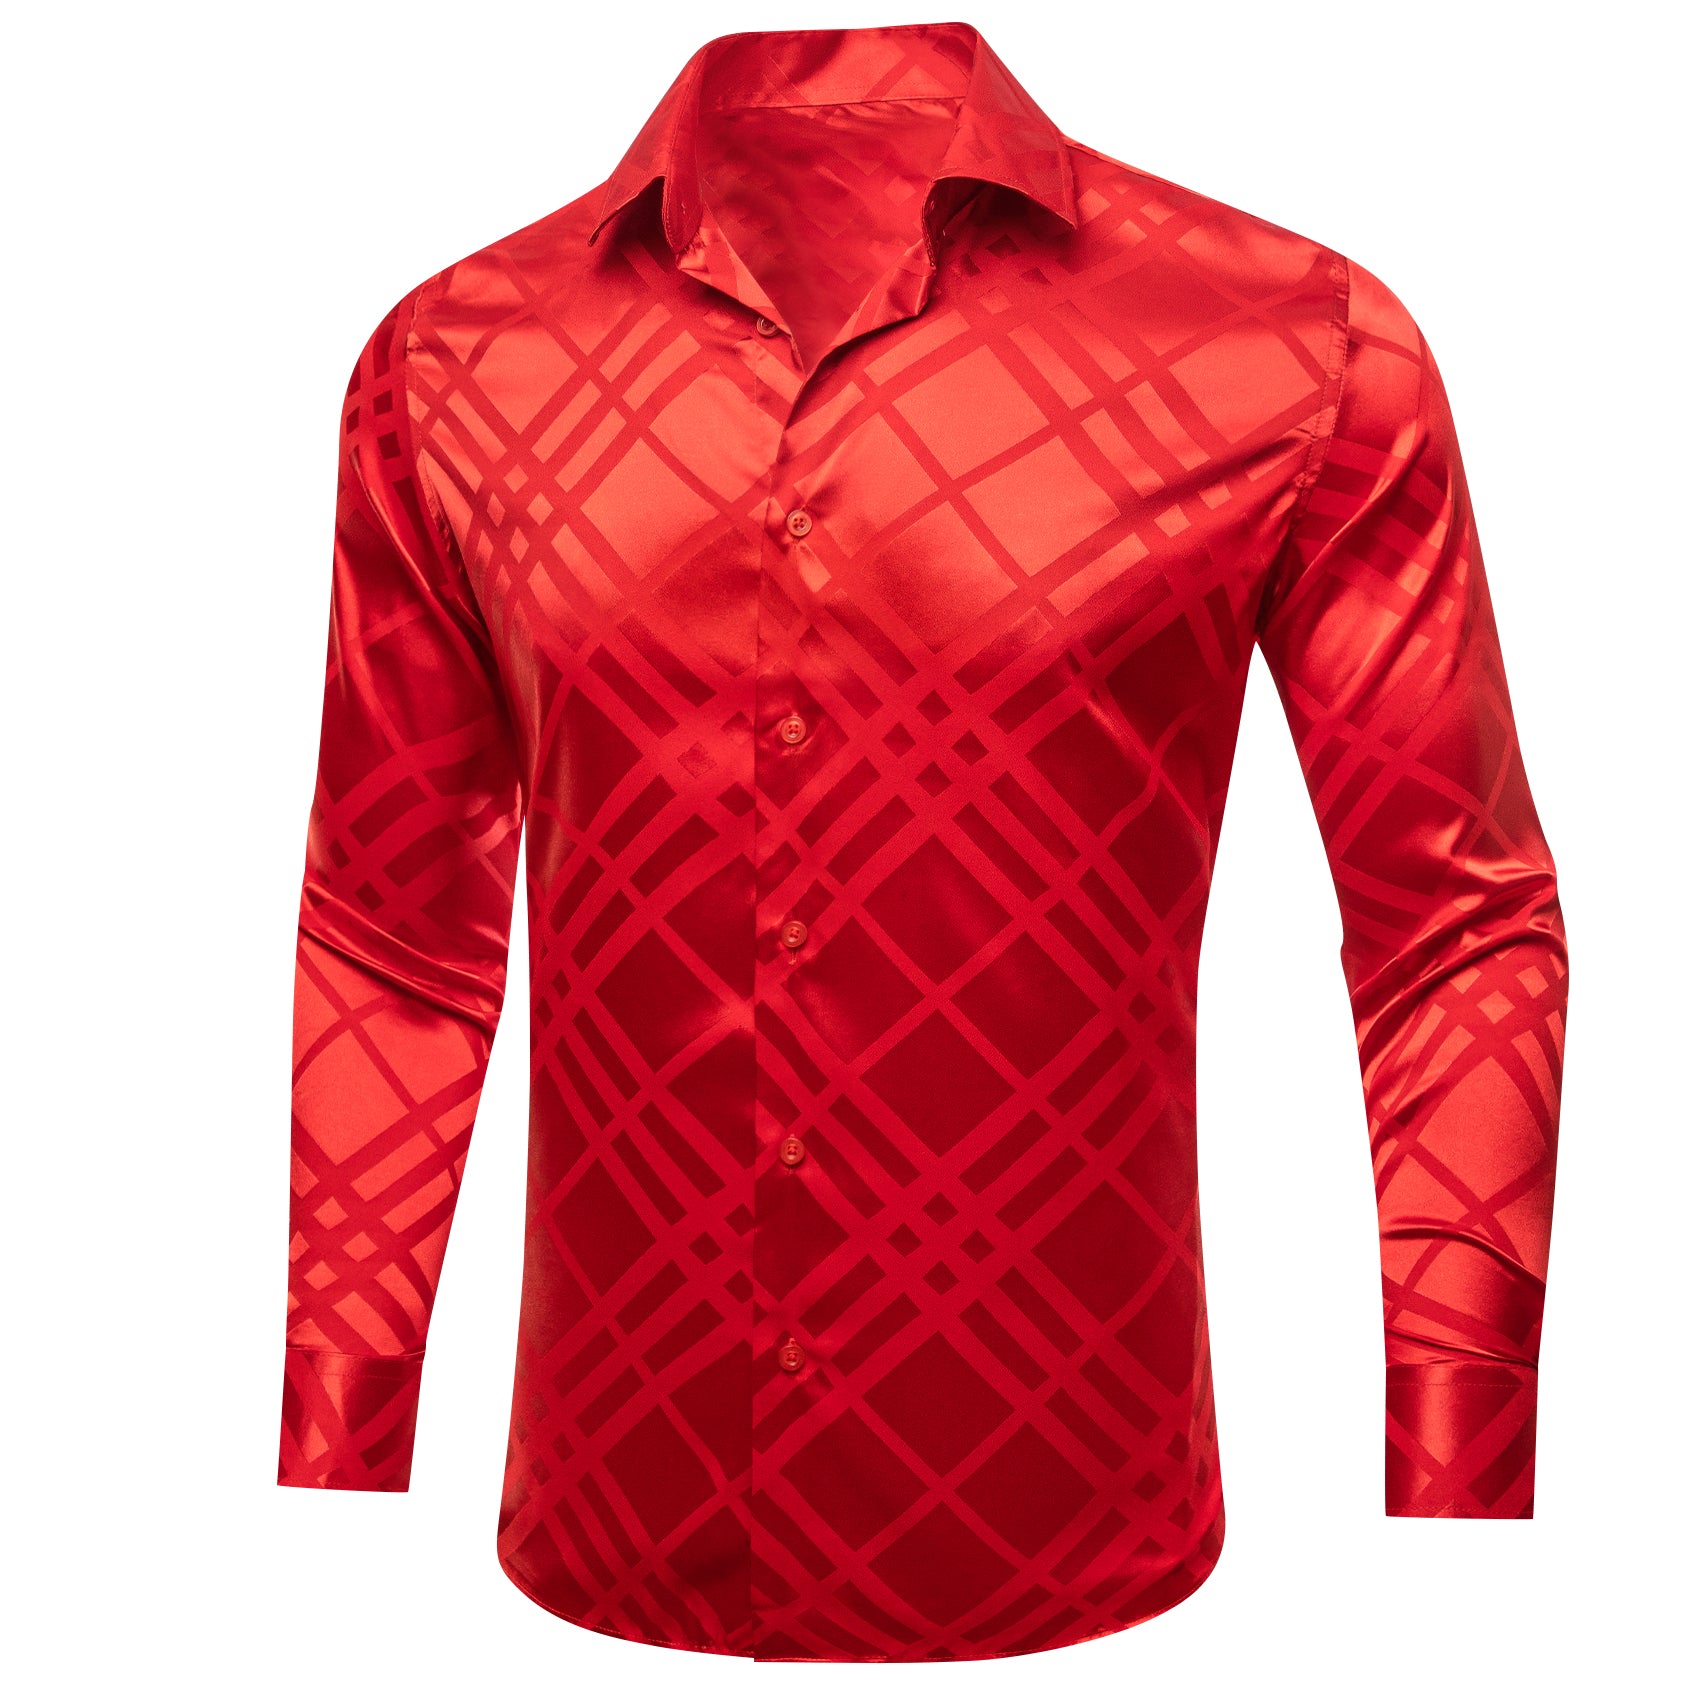 Barry.wang Red Striped Silk Men's Shirt